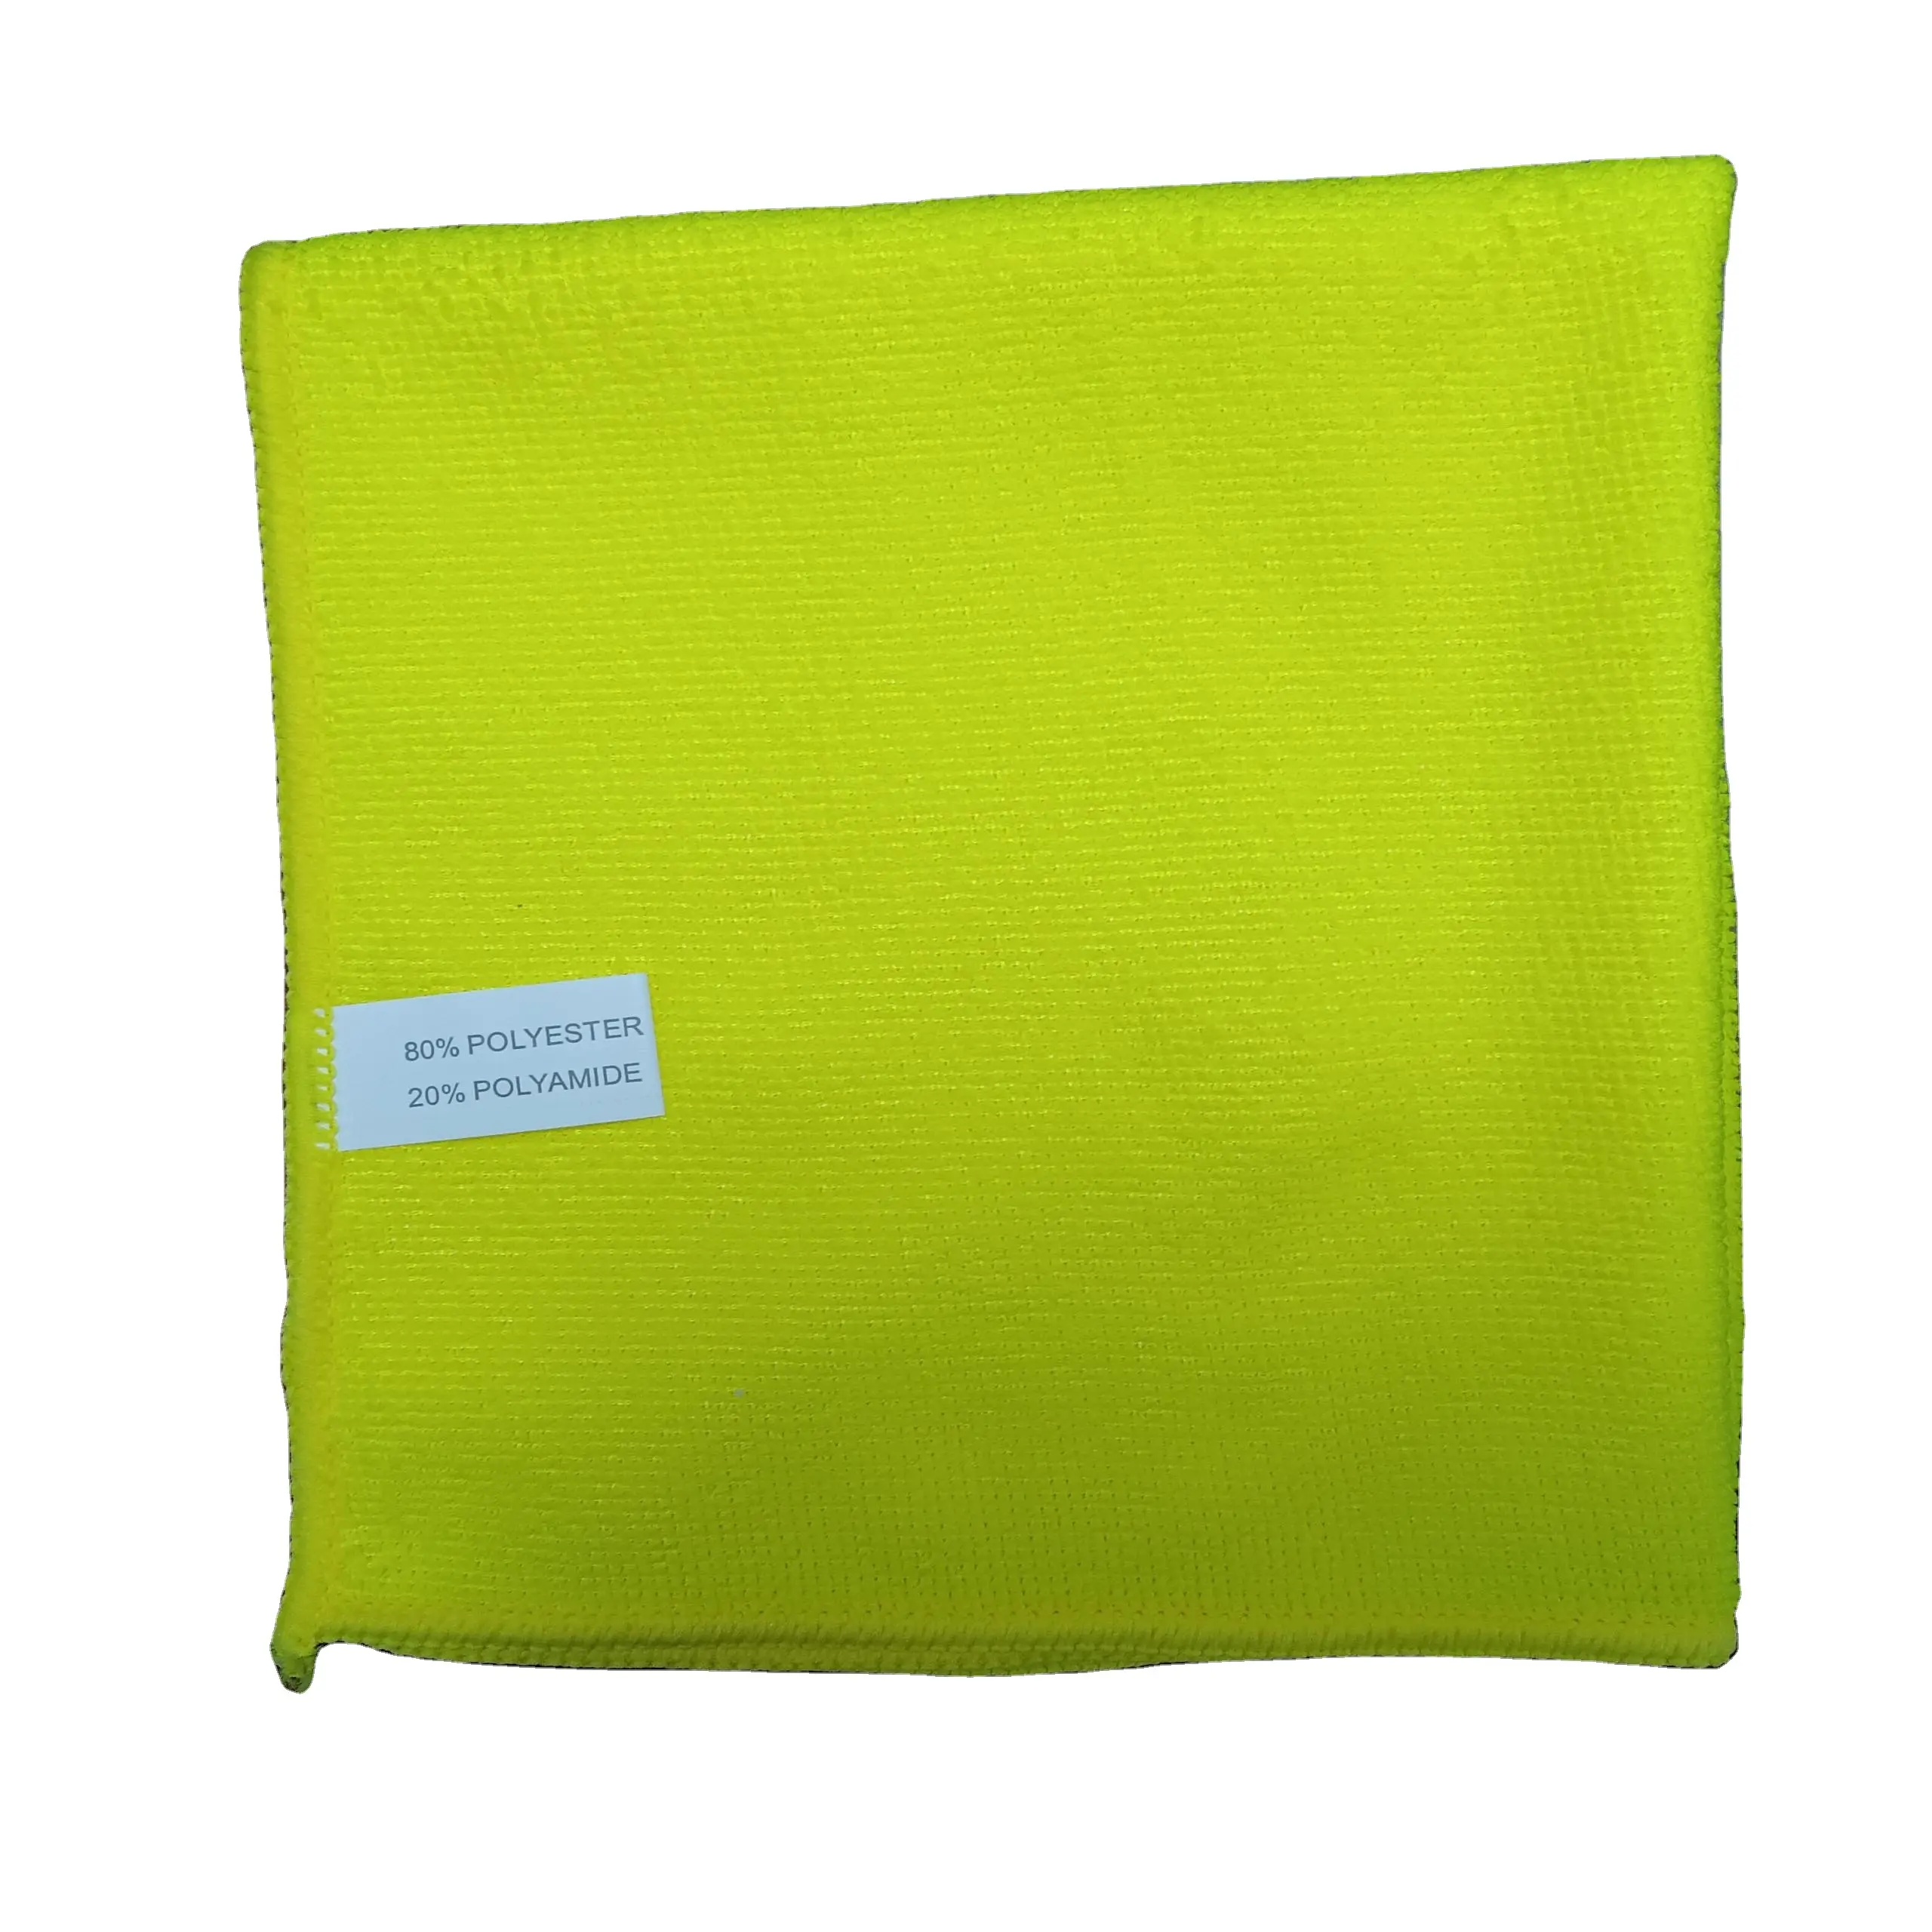 200GSM 40*40cm Serviette en polyester microfibre jaune tissu éponge tricoté pour le nettoyage de la maison et de la cuisine